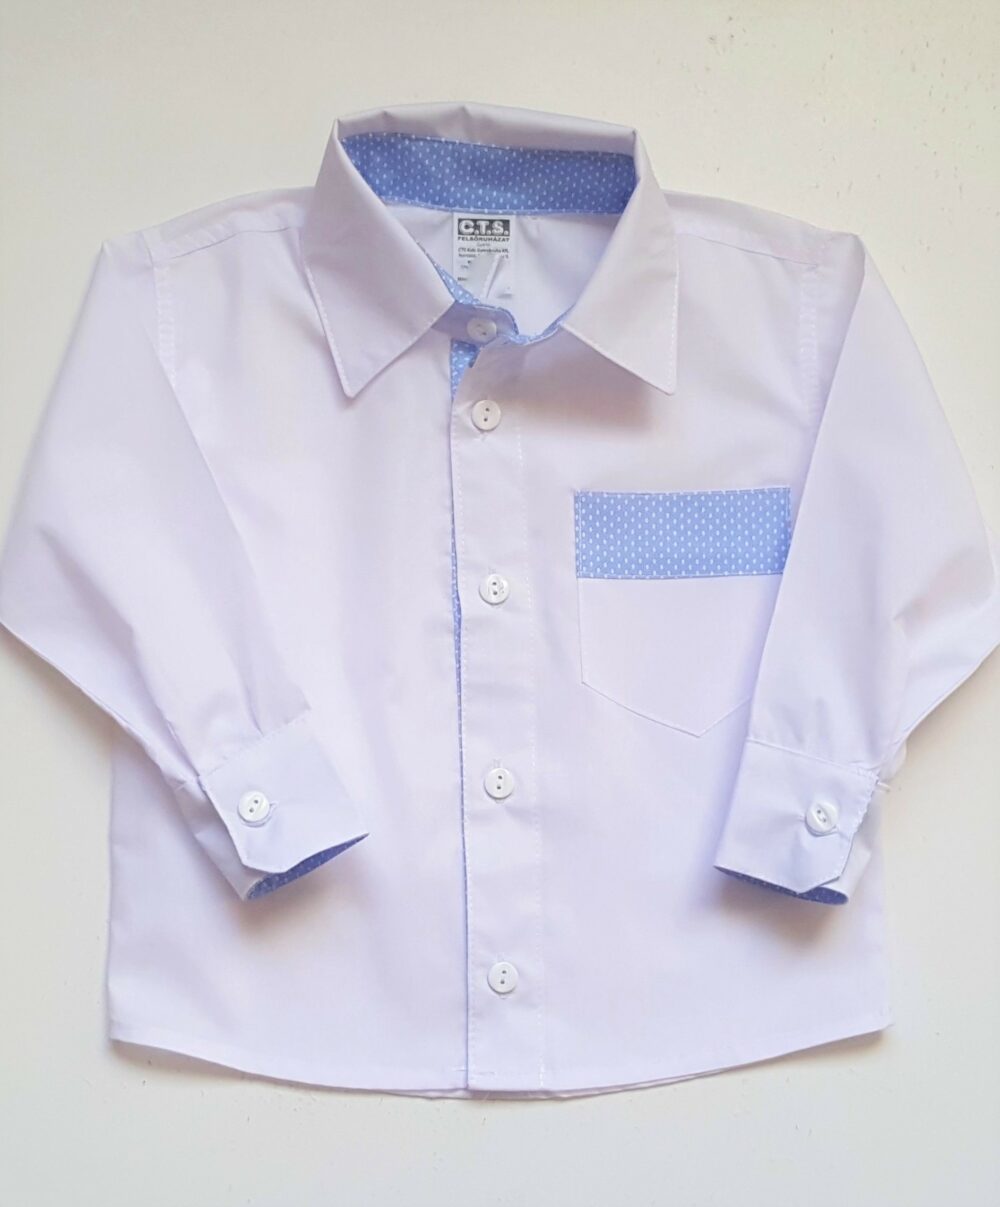 Fiú fehér ing kék díszítéssel 74-es méretű